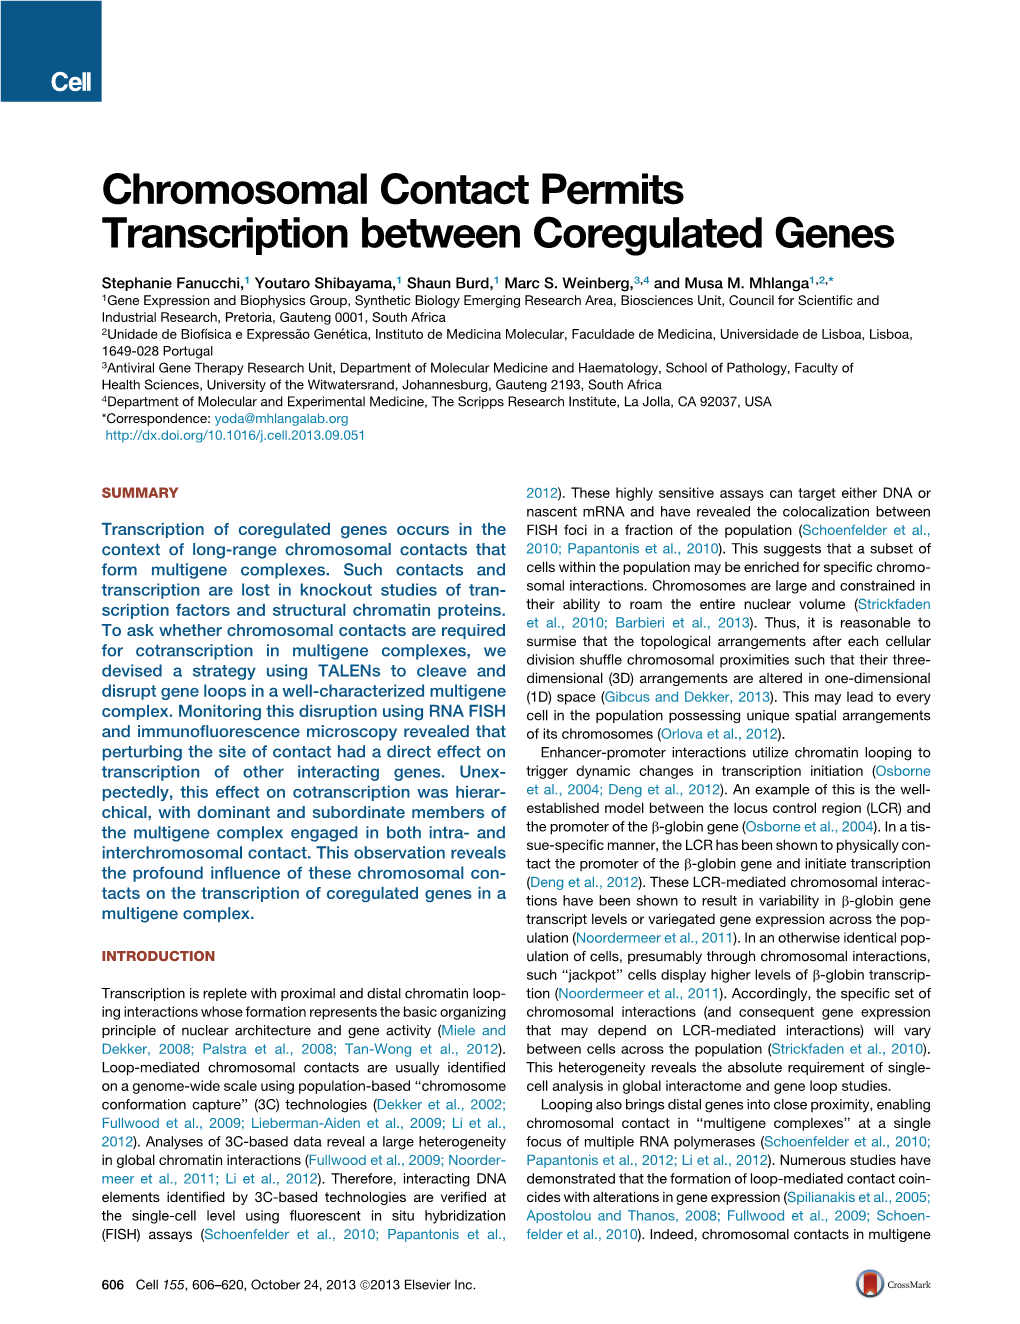 Chromosomal Contact Permits Transcription Between Coregulated Genes